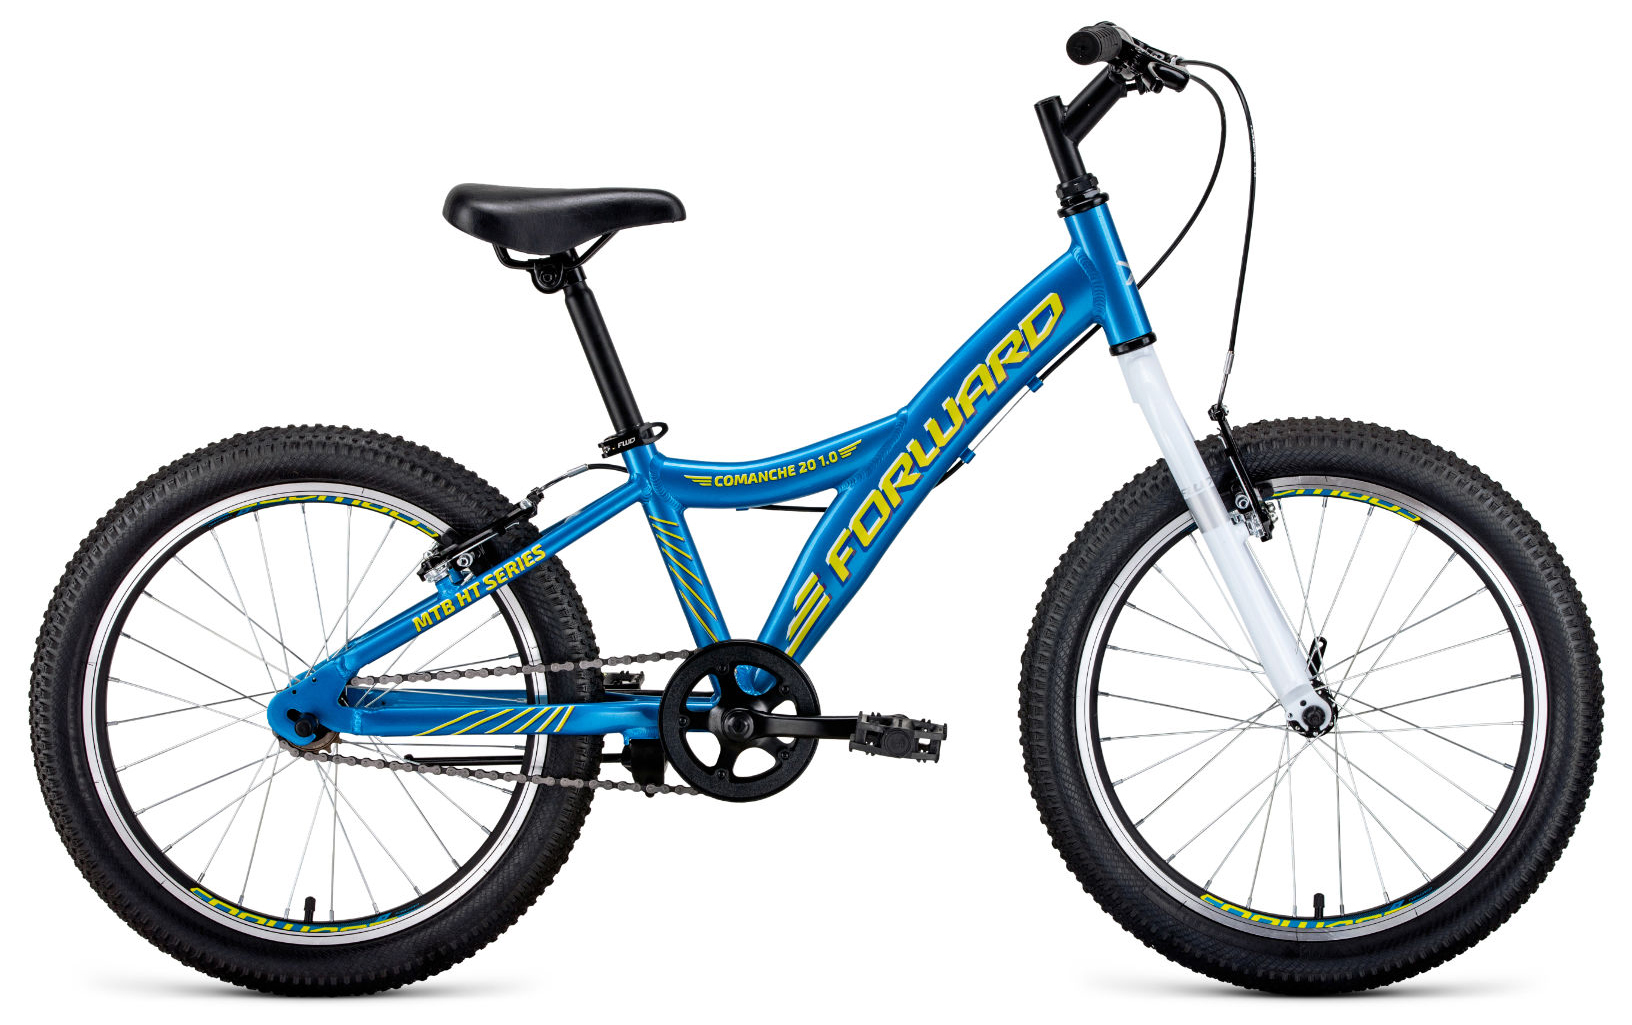  Отзывы о Детском велосипеде Forward Comanche 20 1.0 2020